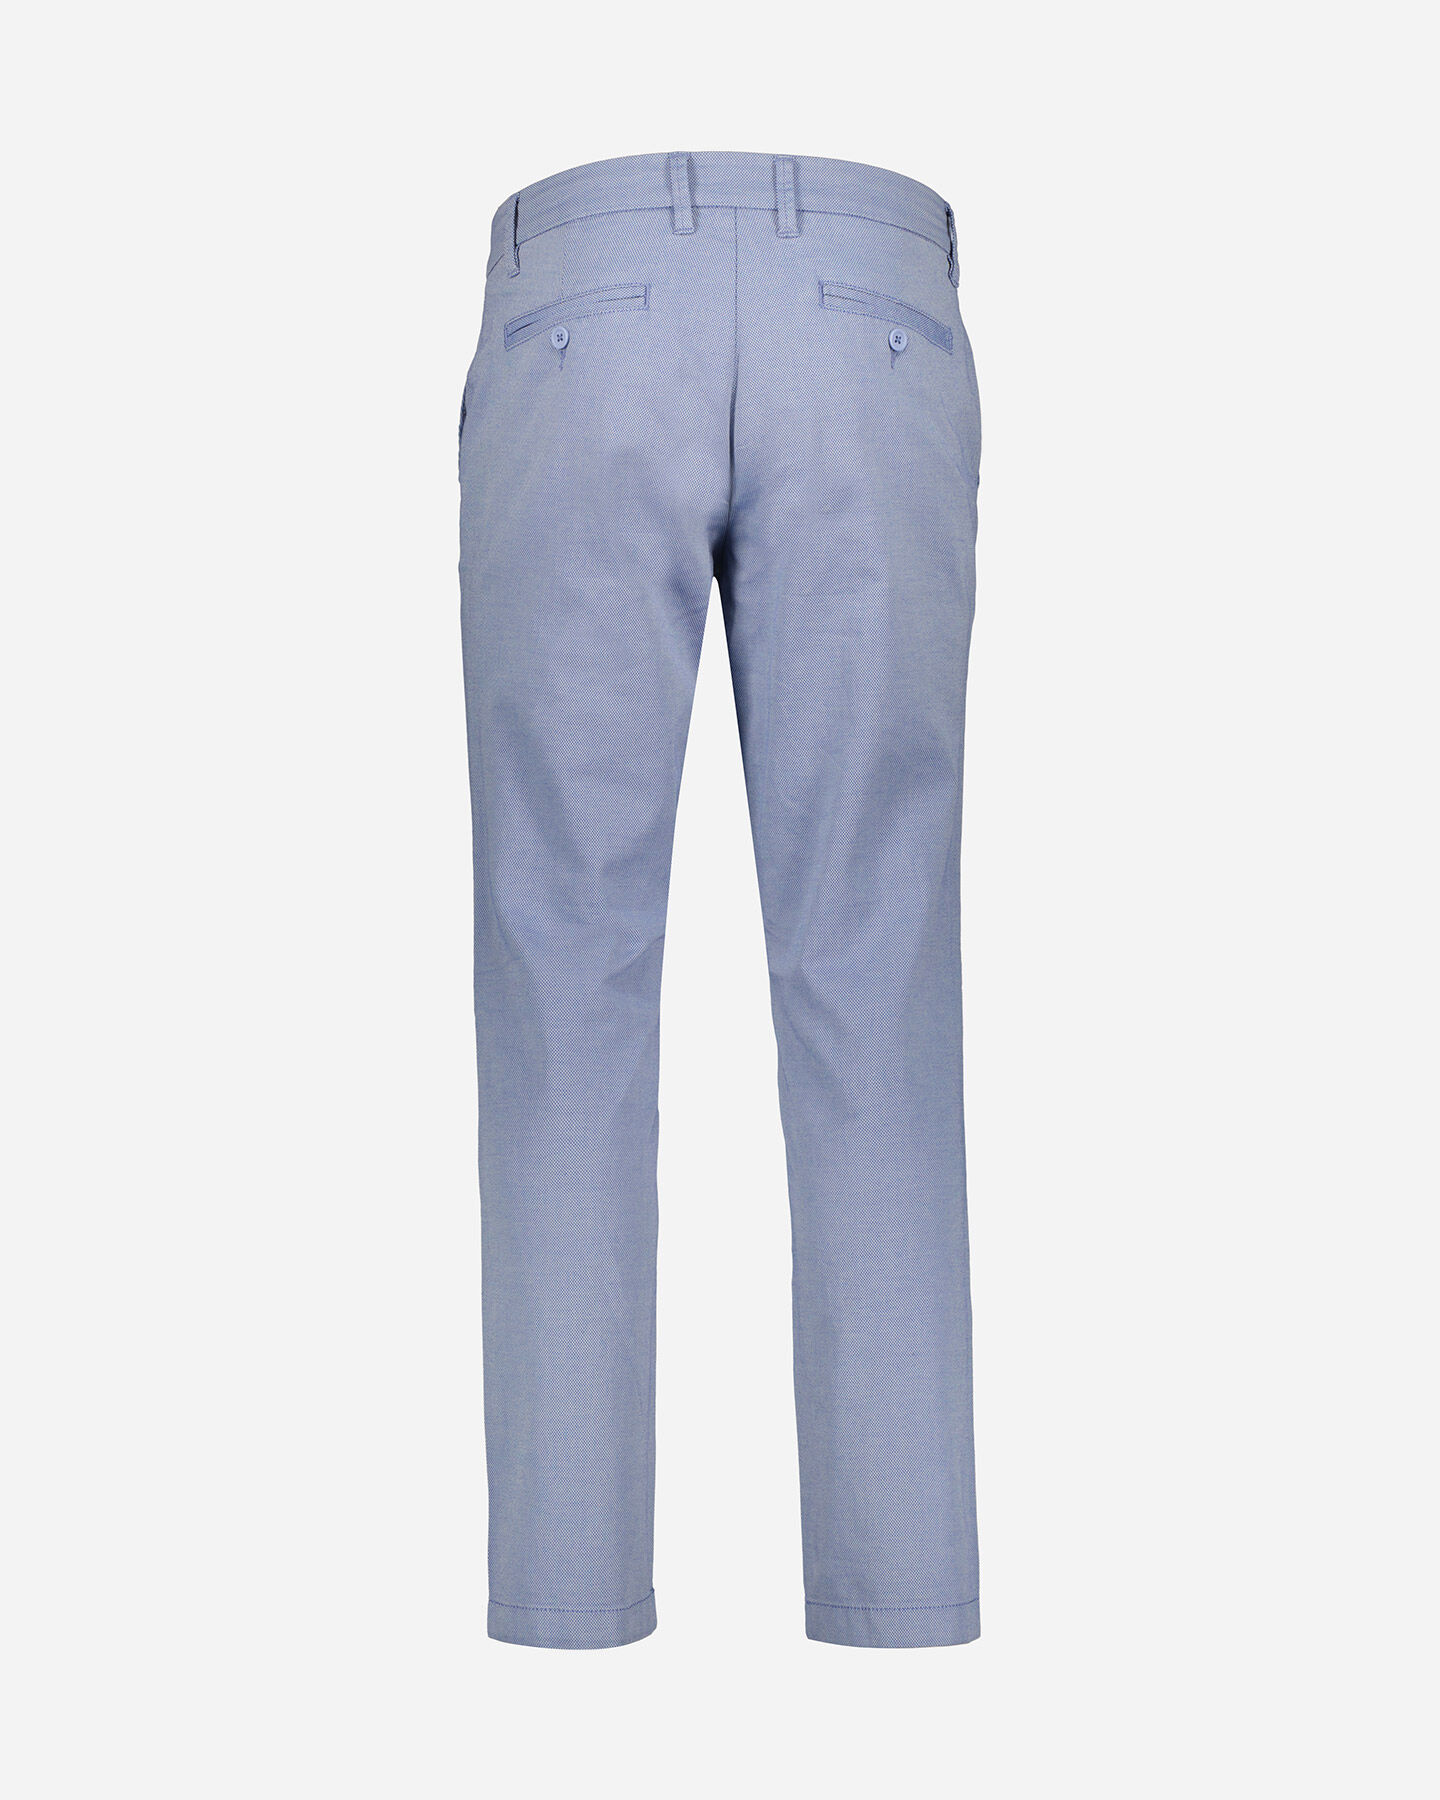  Pantalone DACK'S URBAN M S4129733|522|46 scatto 5